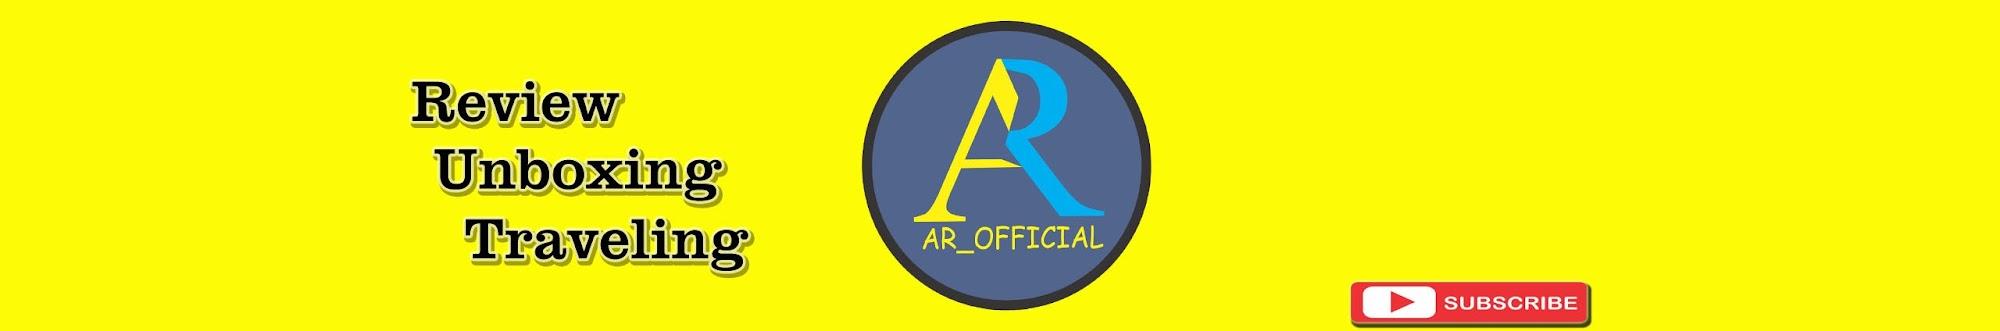 AR_Official